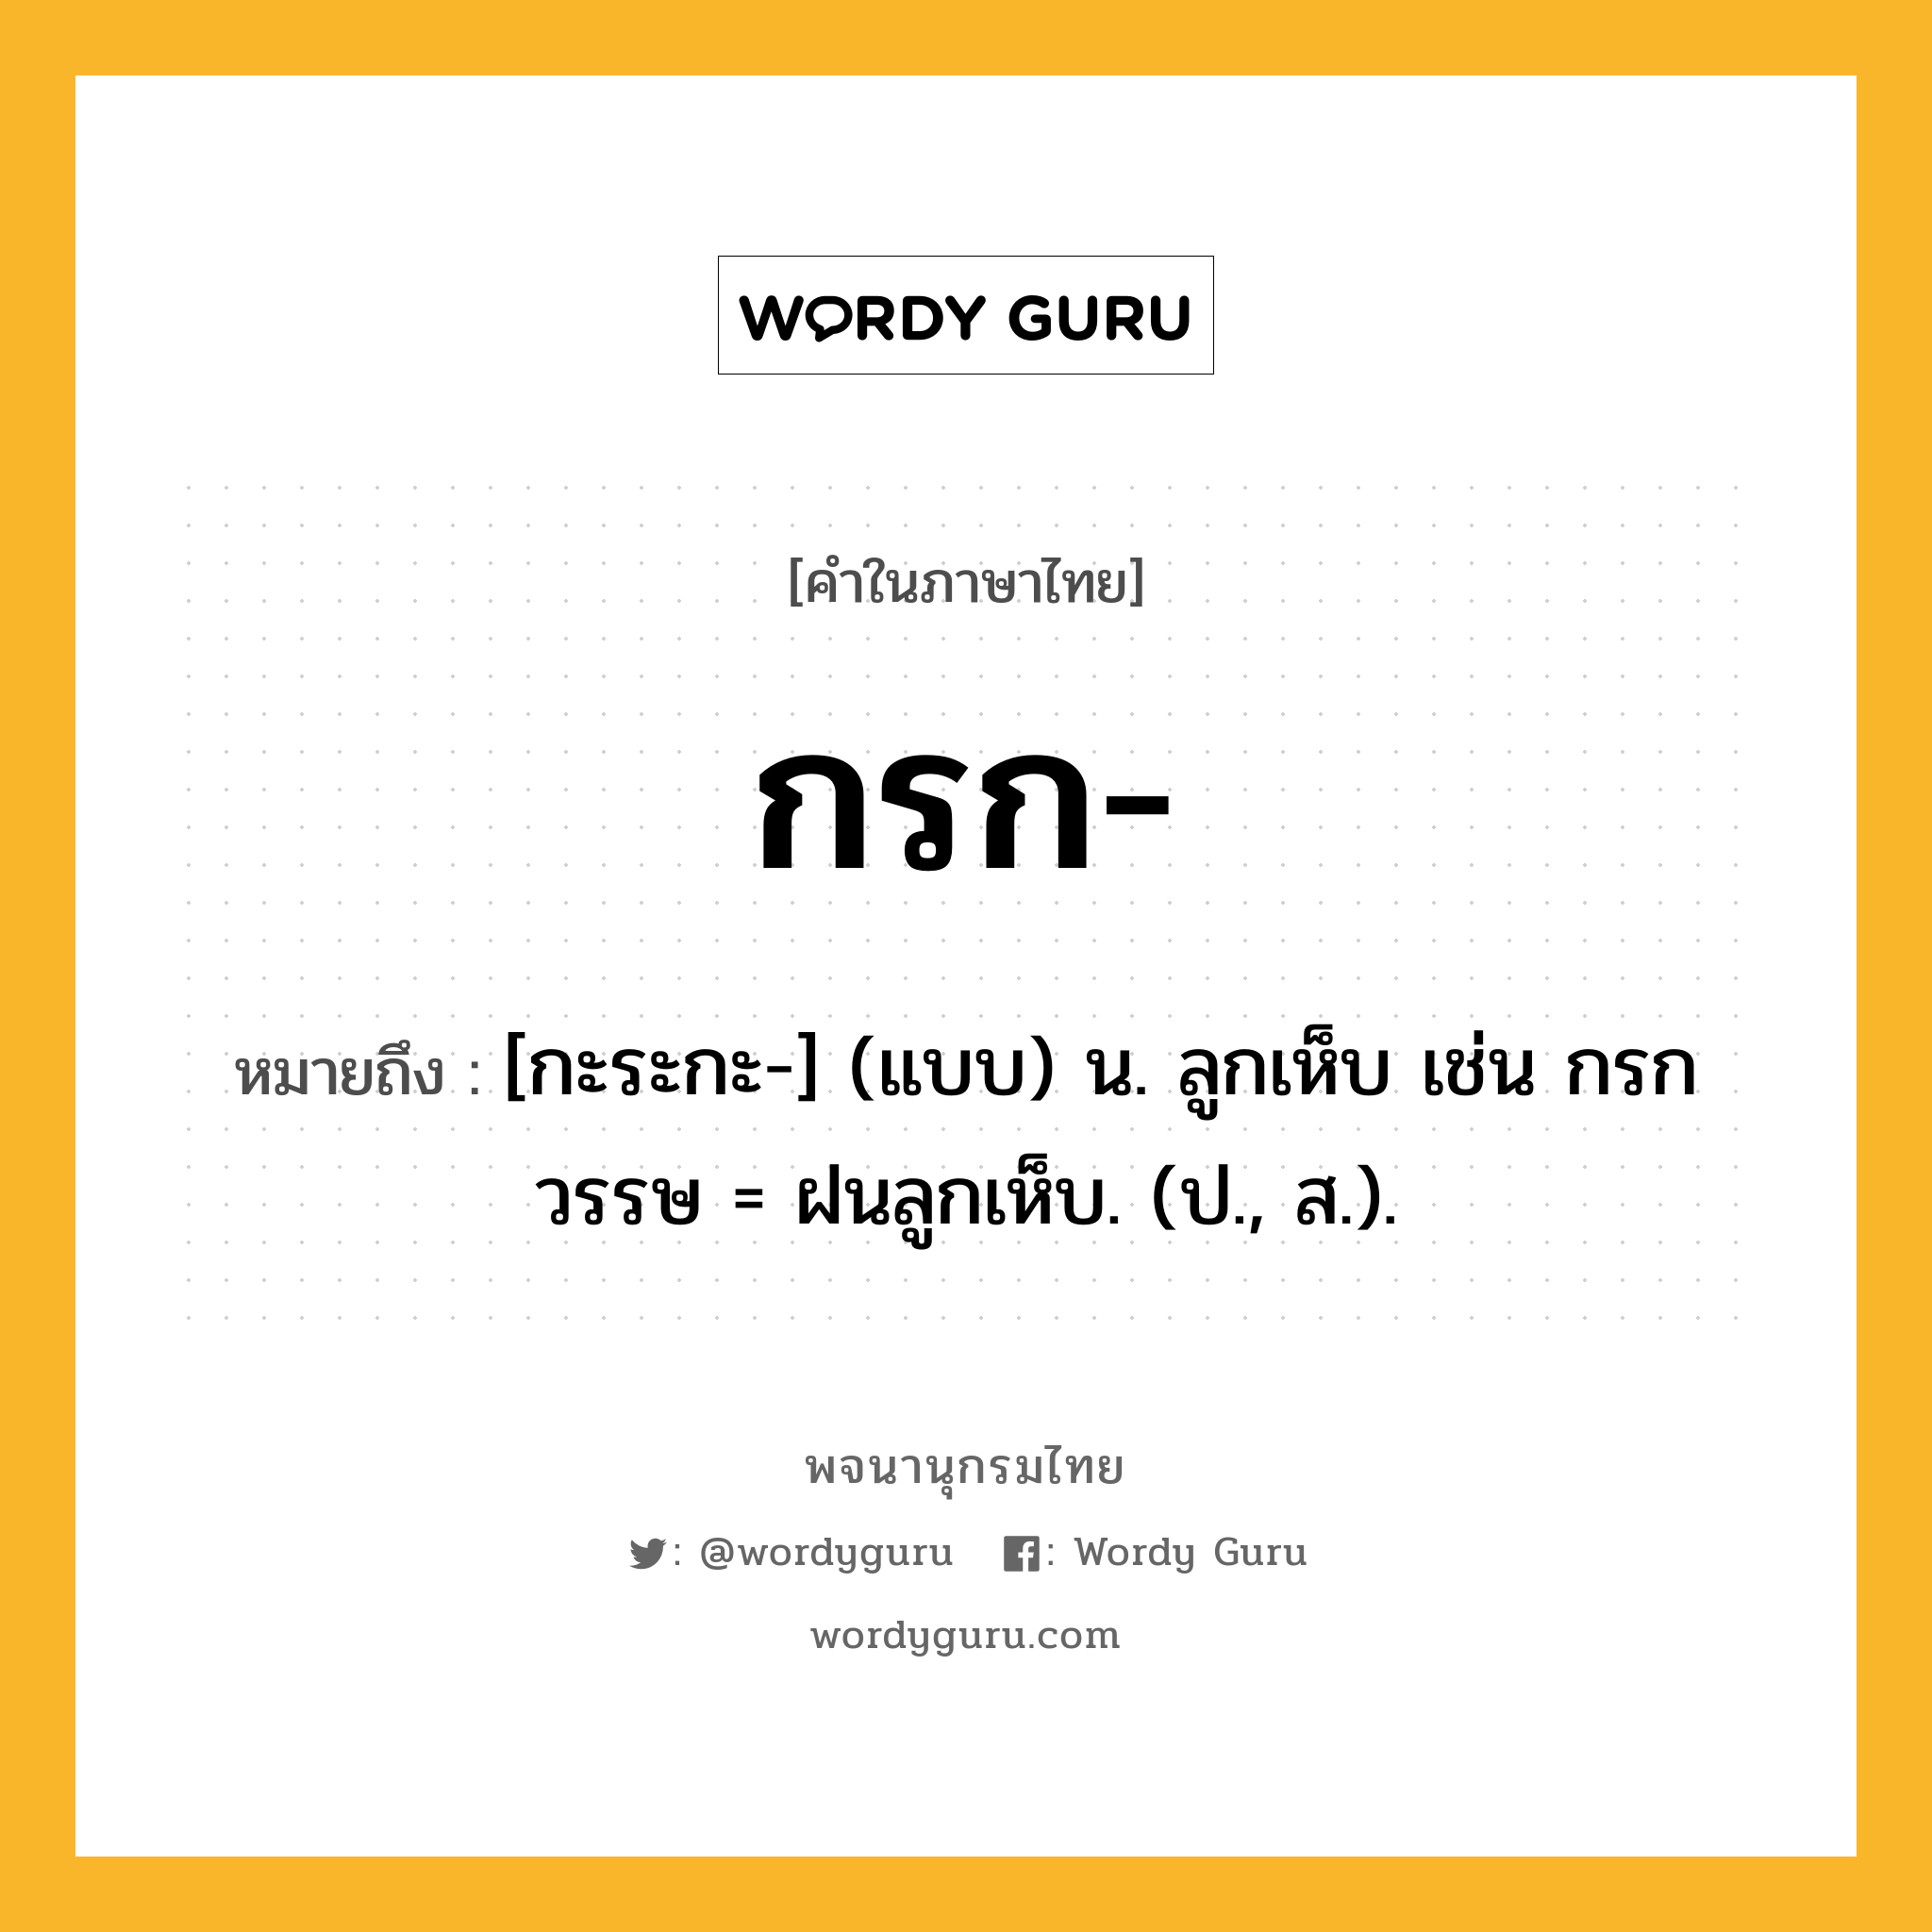 กรก หมายถึงอะไร?, คำในภาษาไทย กรก- หมายถึง [กะระกะ-] (แบบ) น. ลูกเห็บ เช่น กรกวรรษ = ฝนลูกเห็บ. (ป., ส.).